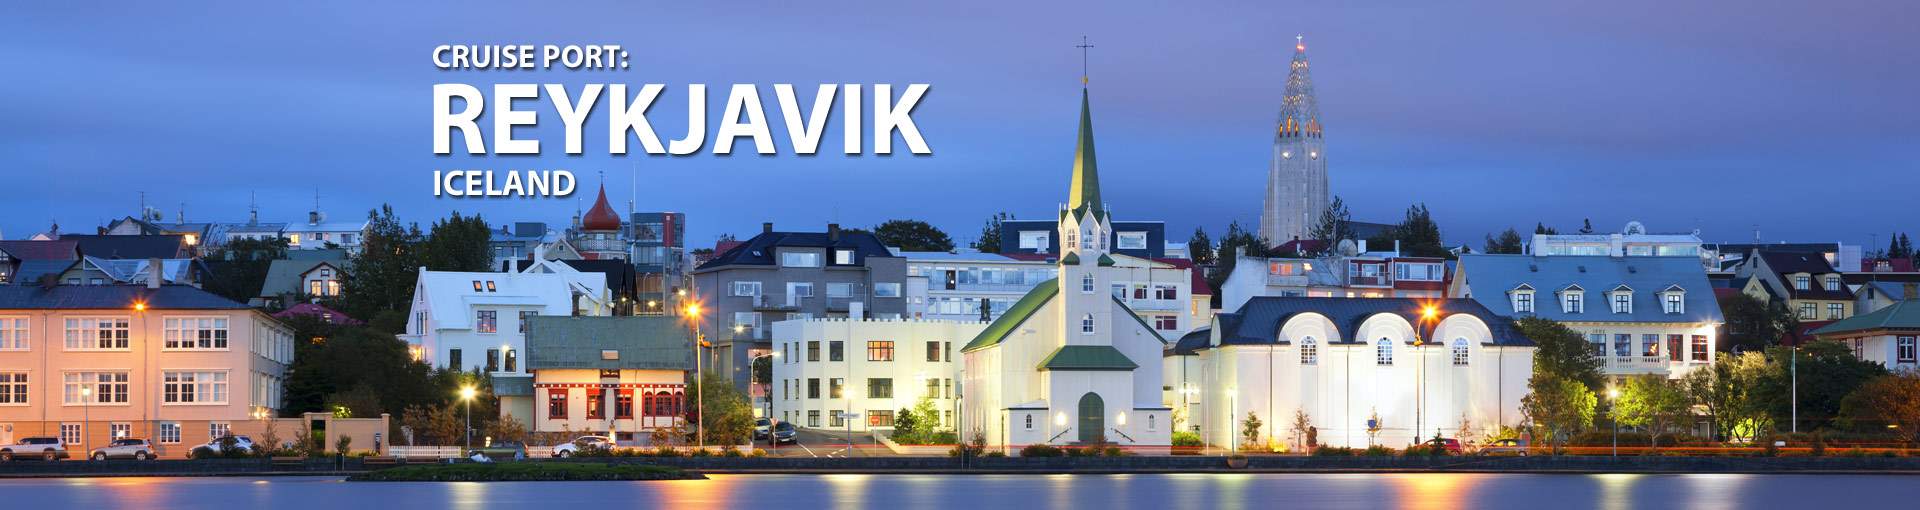 Reykjavik, Iceland Cruise Port, 2019, 2020 and 2021 Cruises from